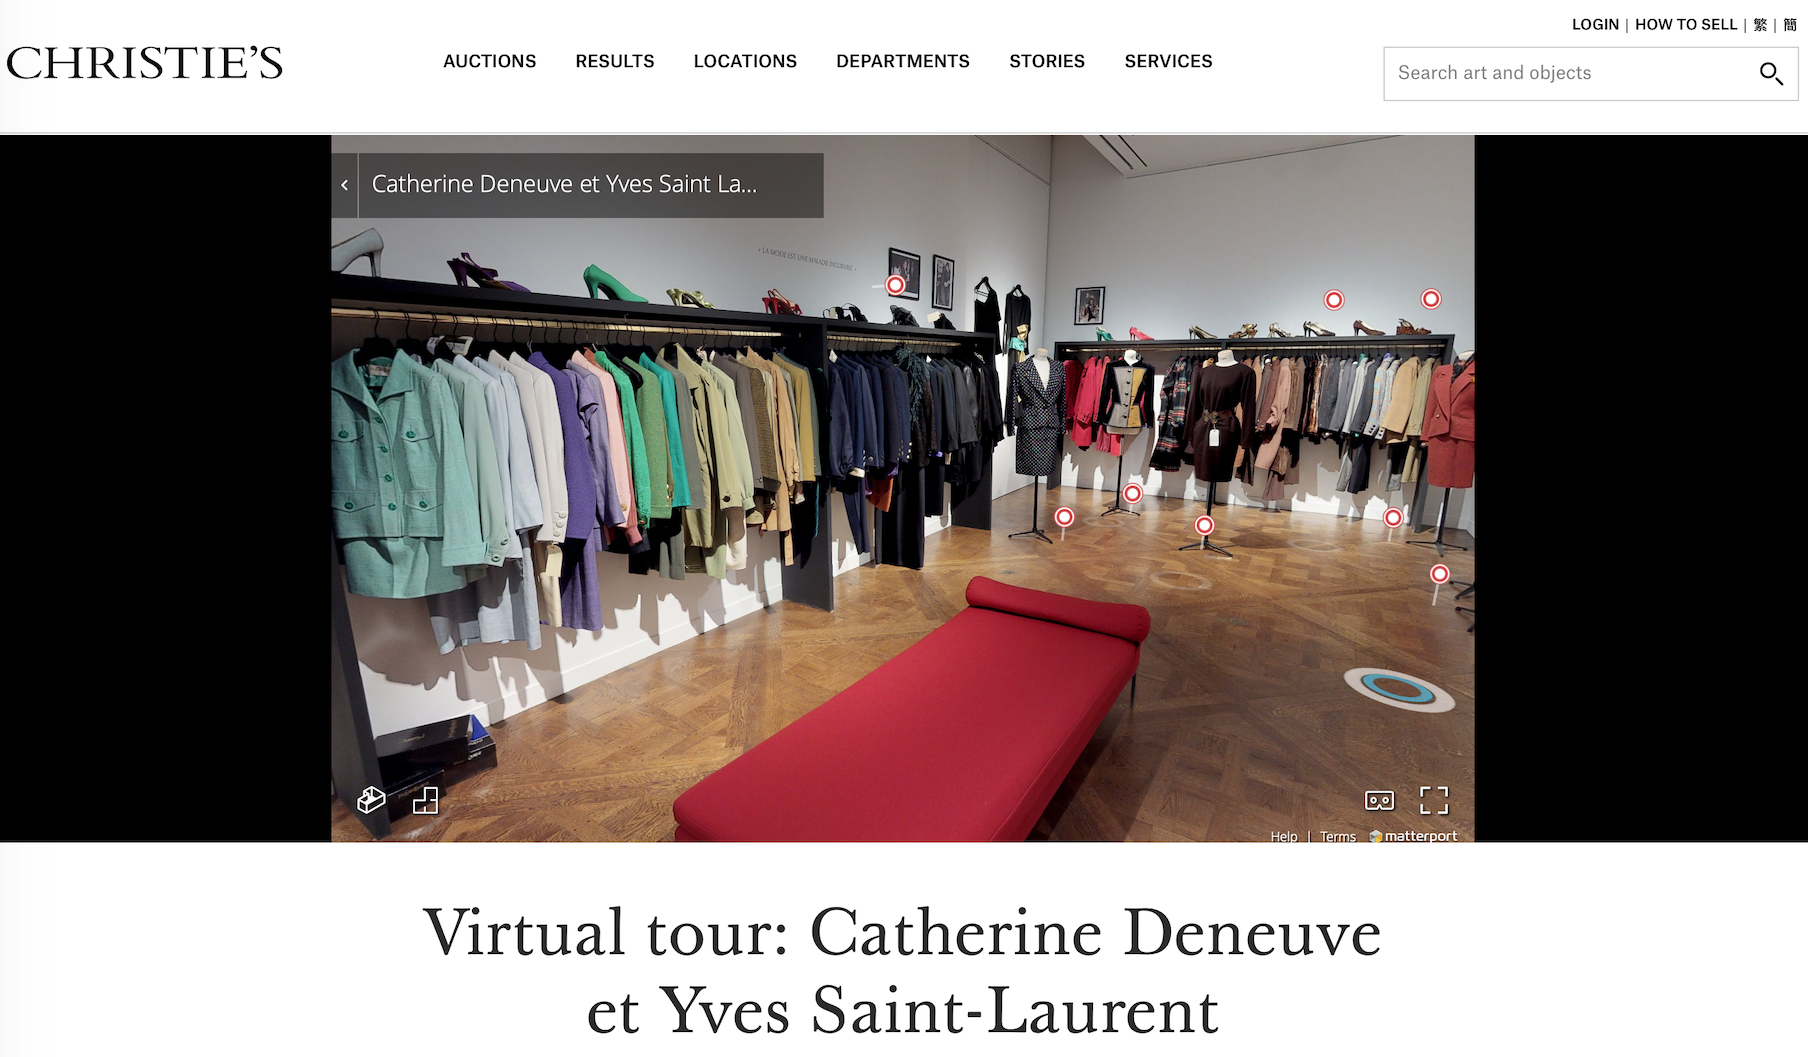 法國傳奇女演員凱薩琳丹妮芙拍賣一批珍貴的YSL高訂禮服，130件拍得百萬美元(3).png